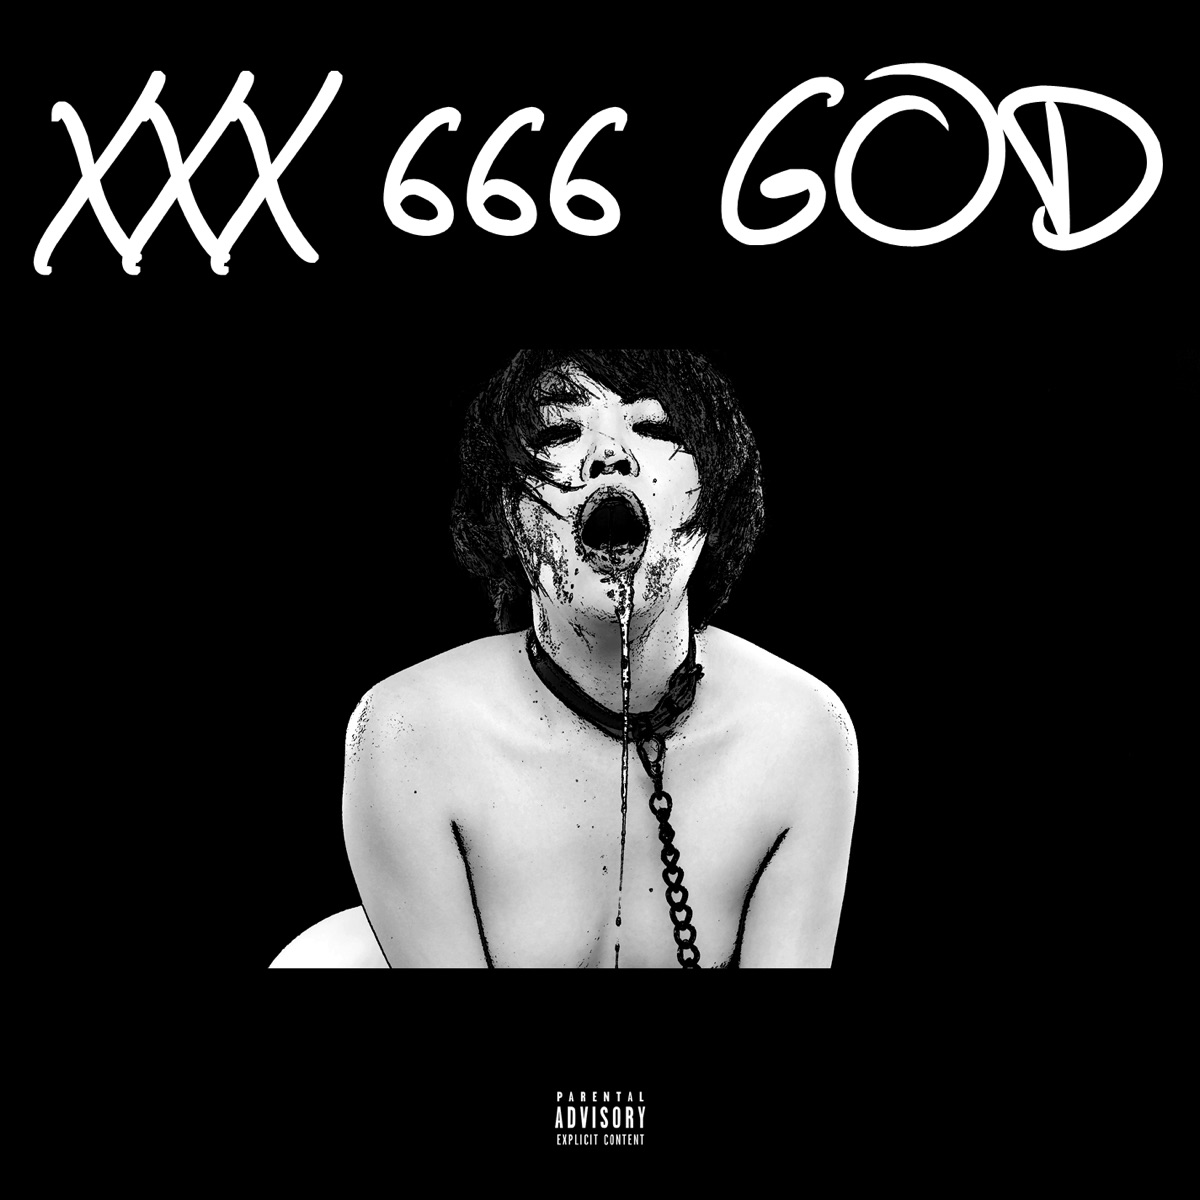 â€Žâ€Asian Porn EPâ€ Ã¡lbum de XXX 666 GOD en Apple Music